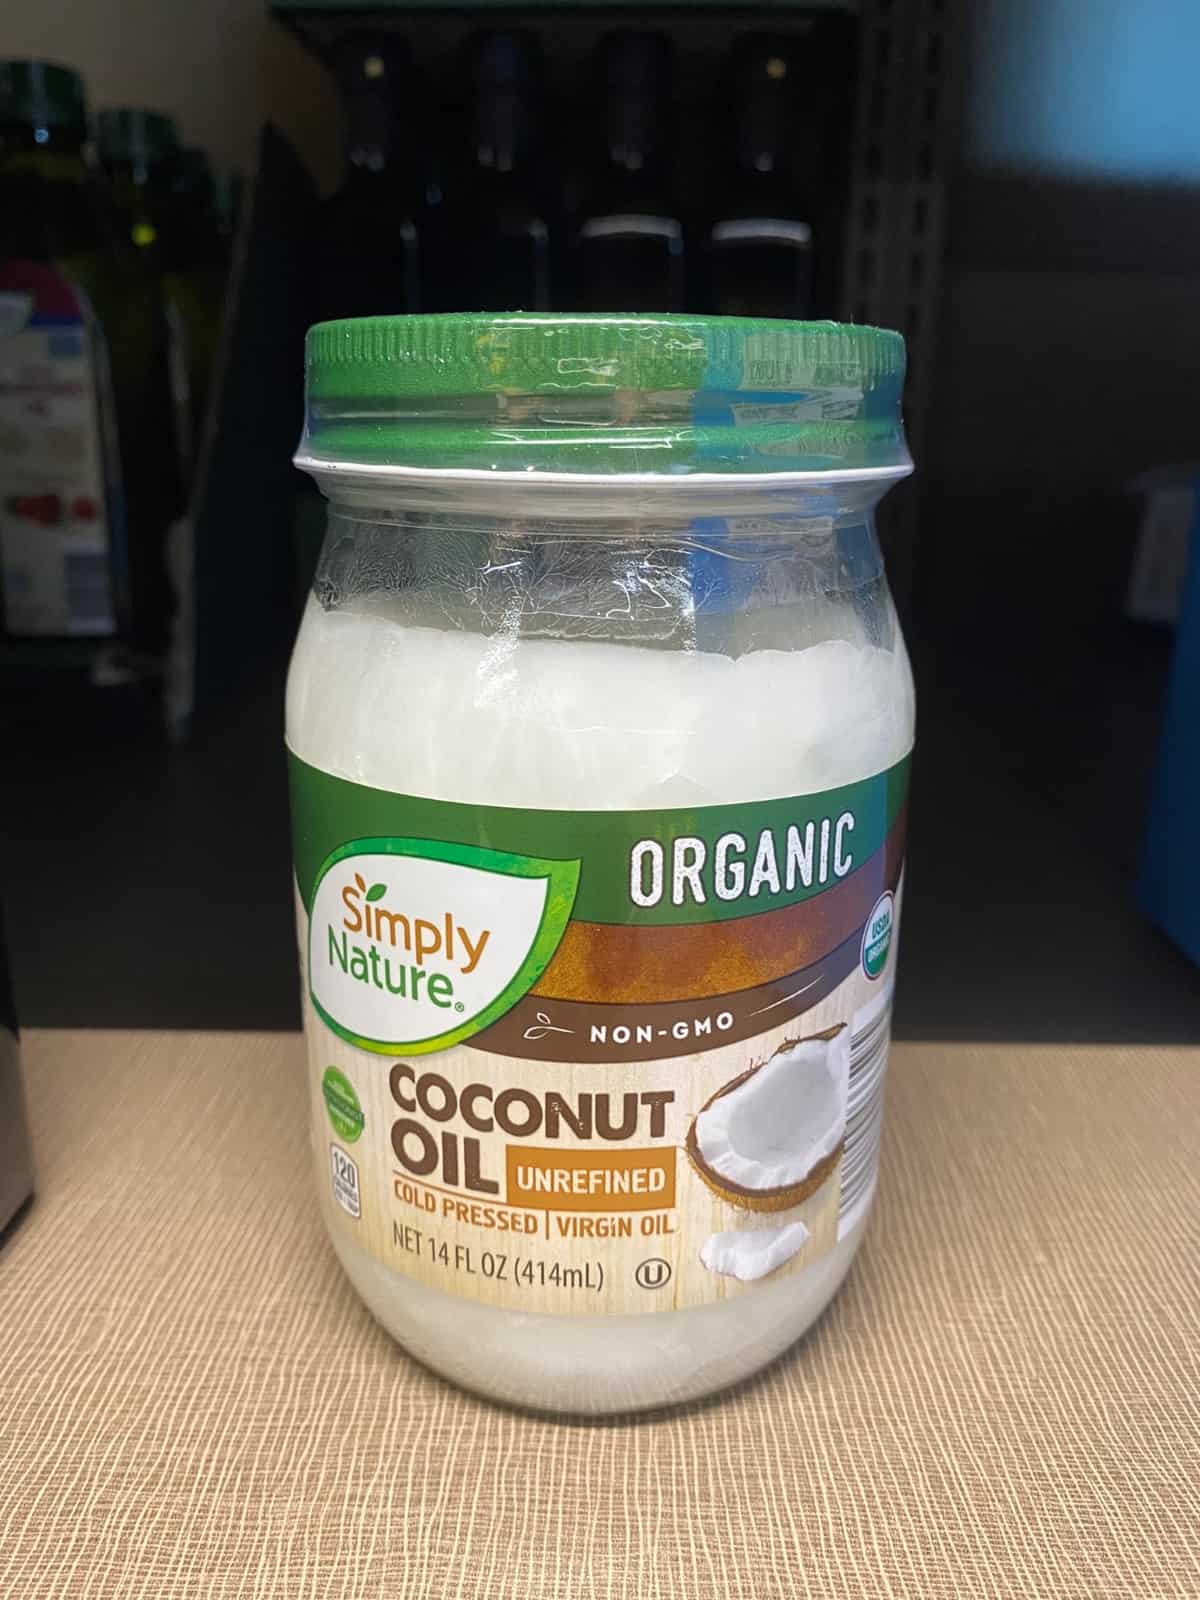 Aldi Coconut Oil on a shelf.